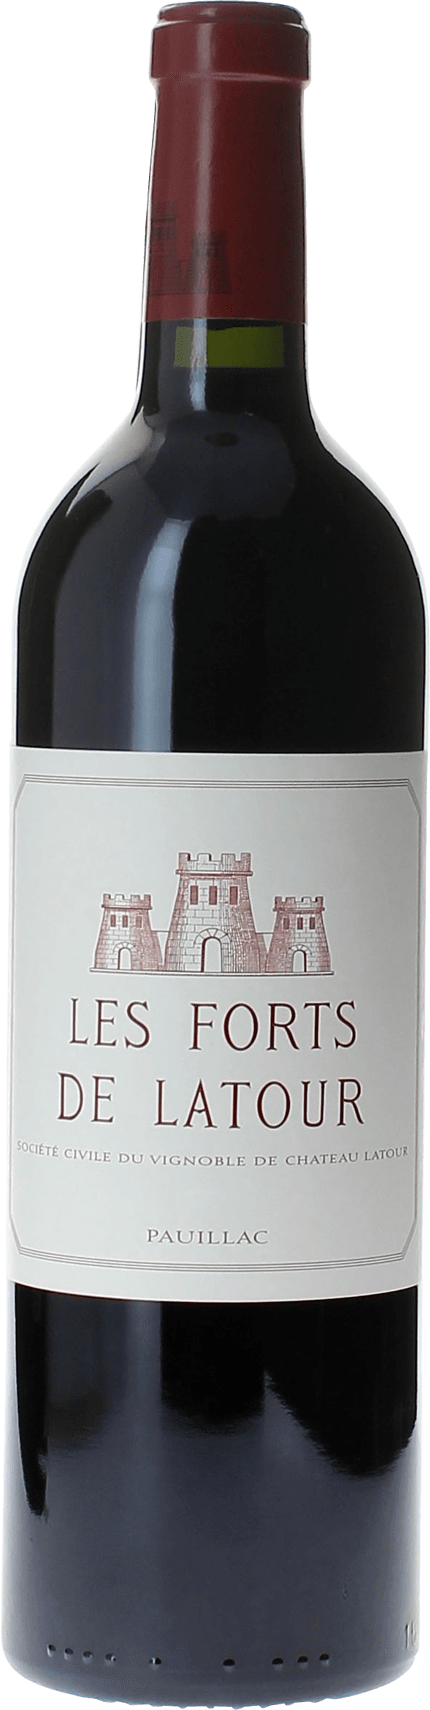 Les forts de latour 1982 2me vin de LATOUR Pauillac, Bordeaux rouge